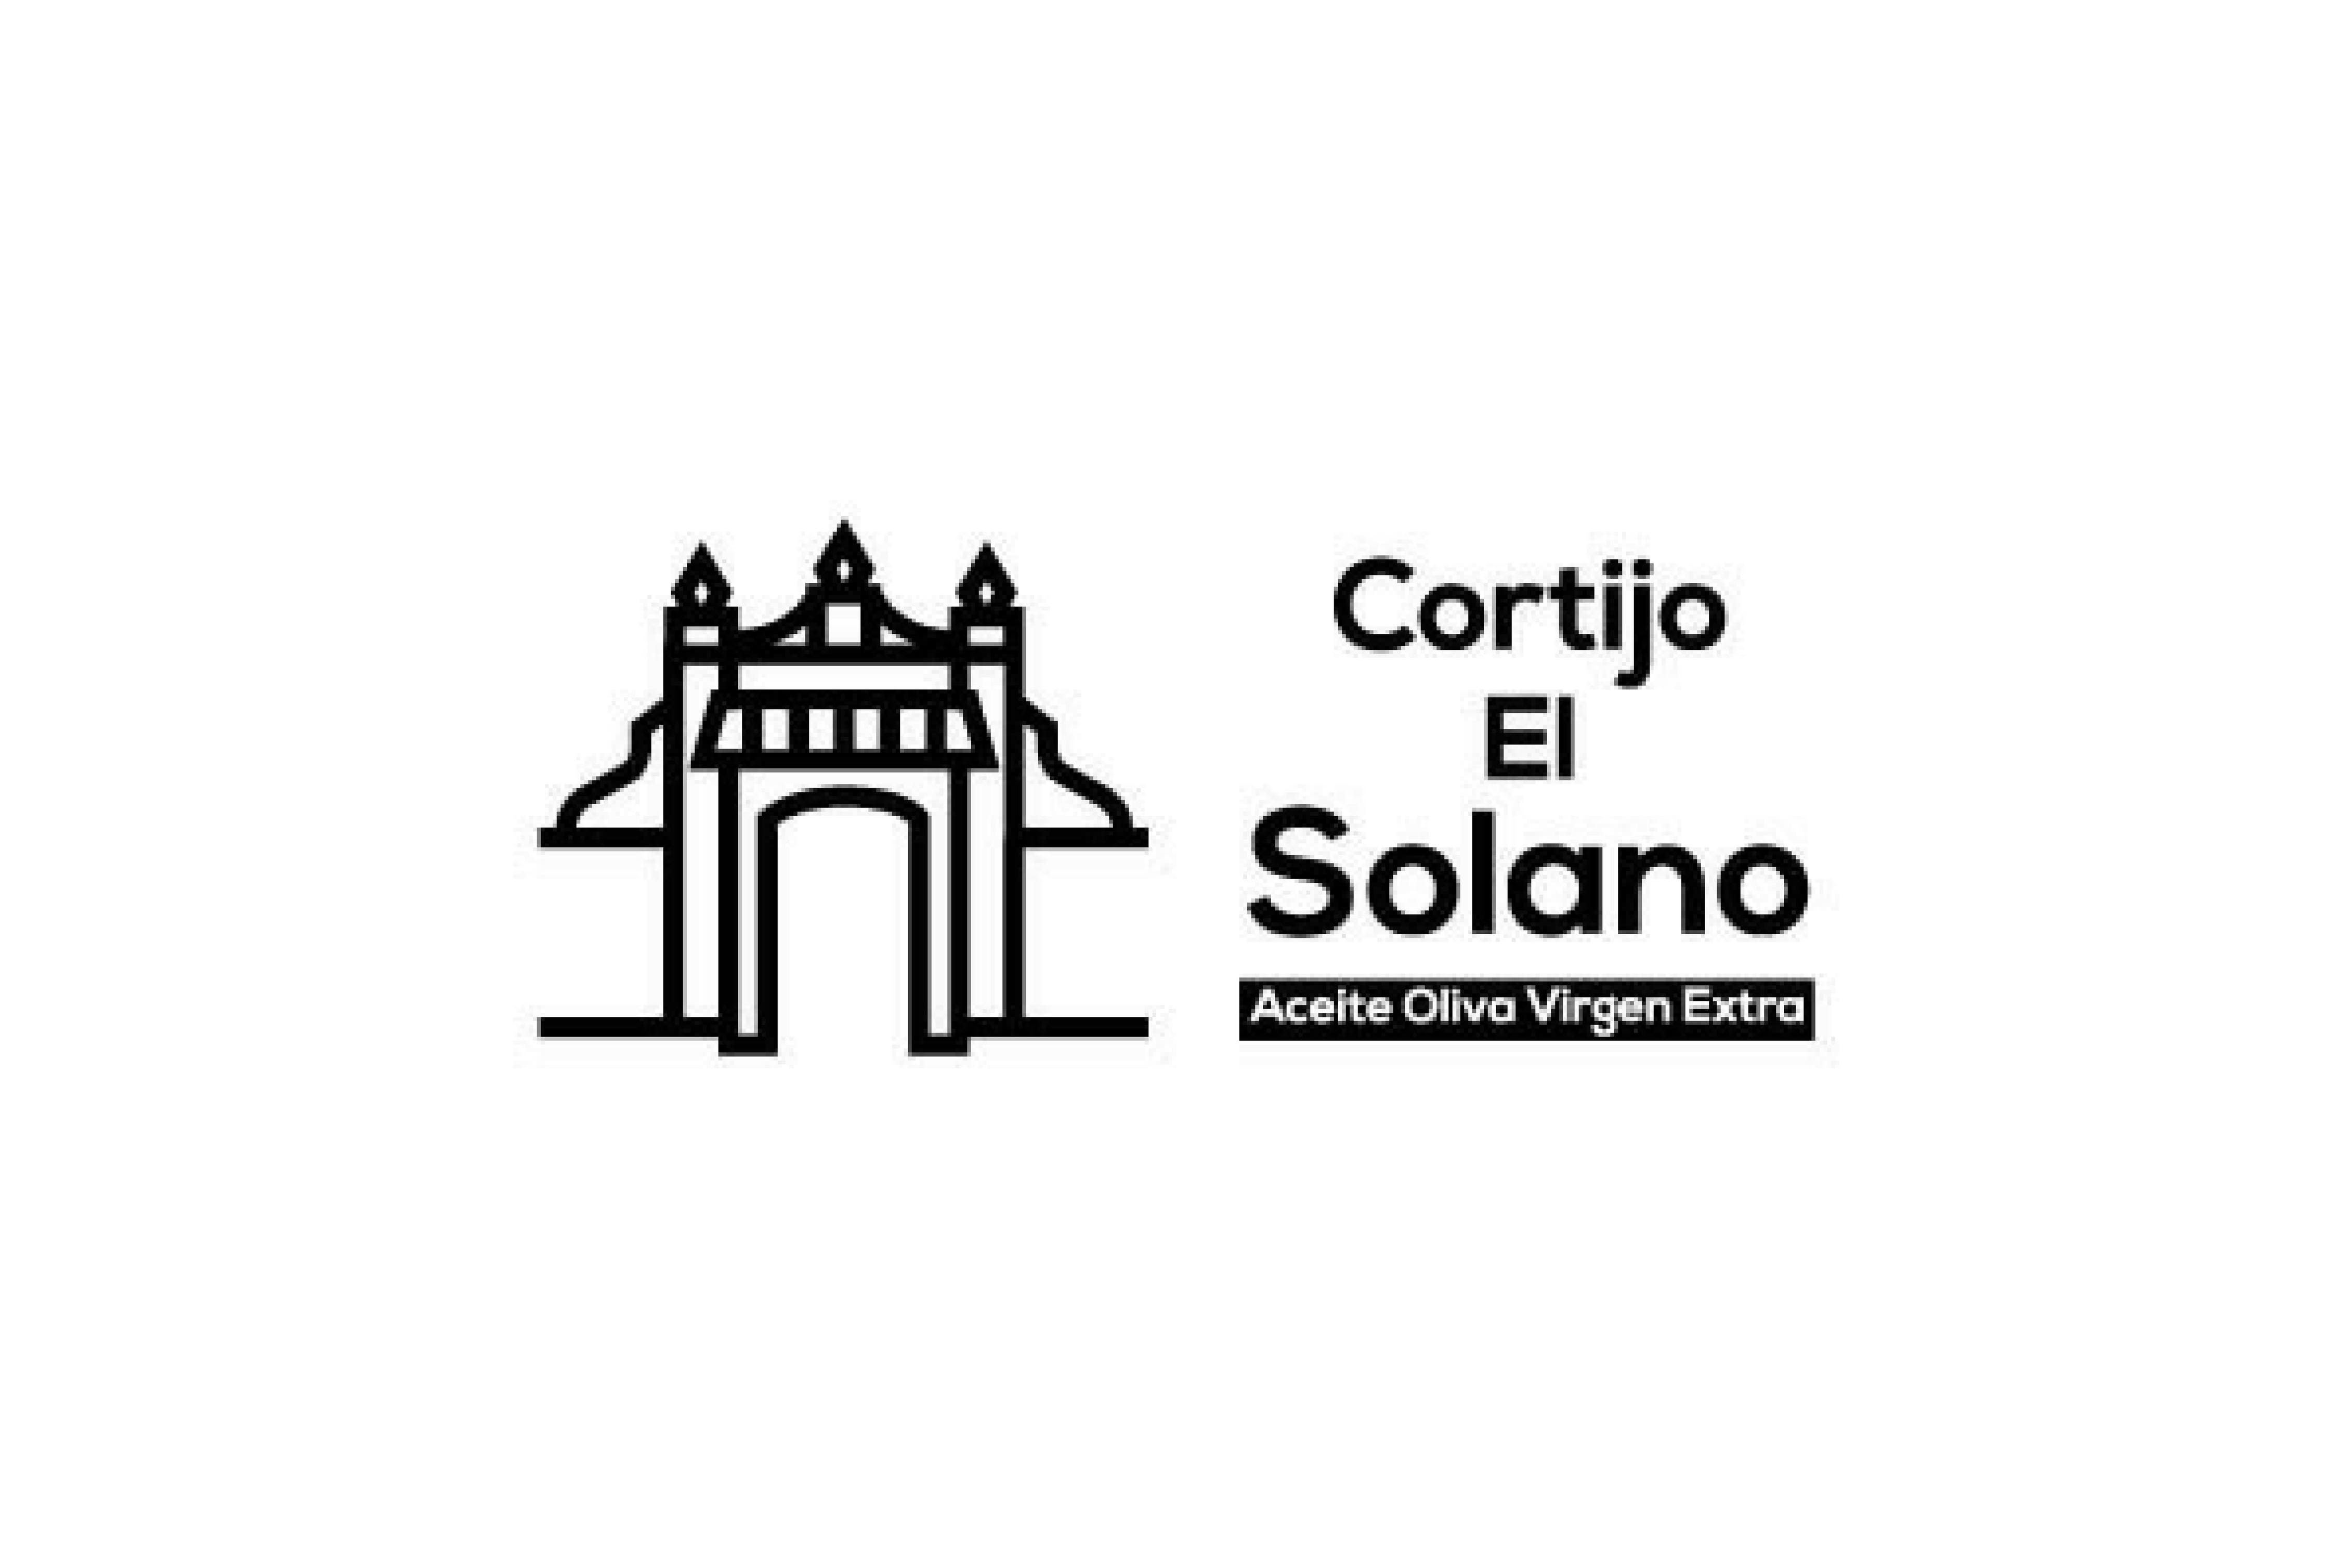 Cortijo El Solano